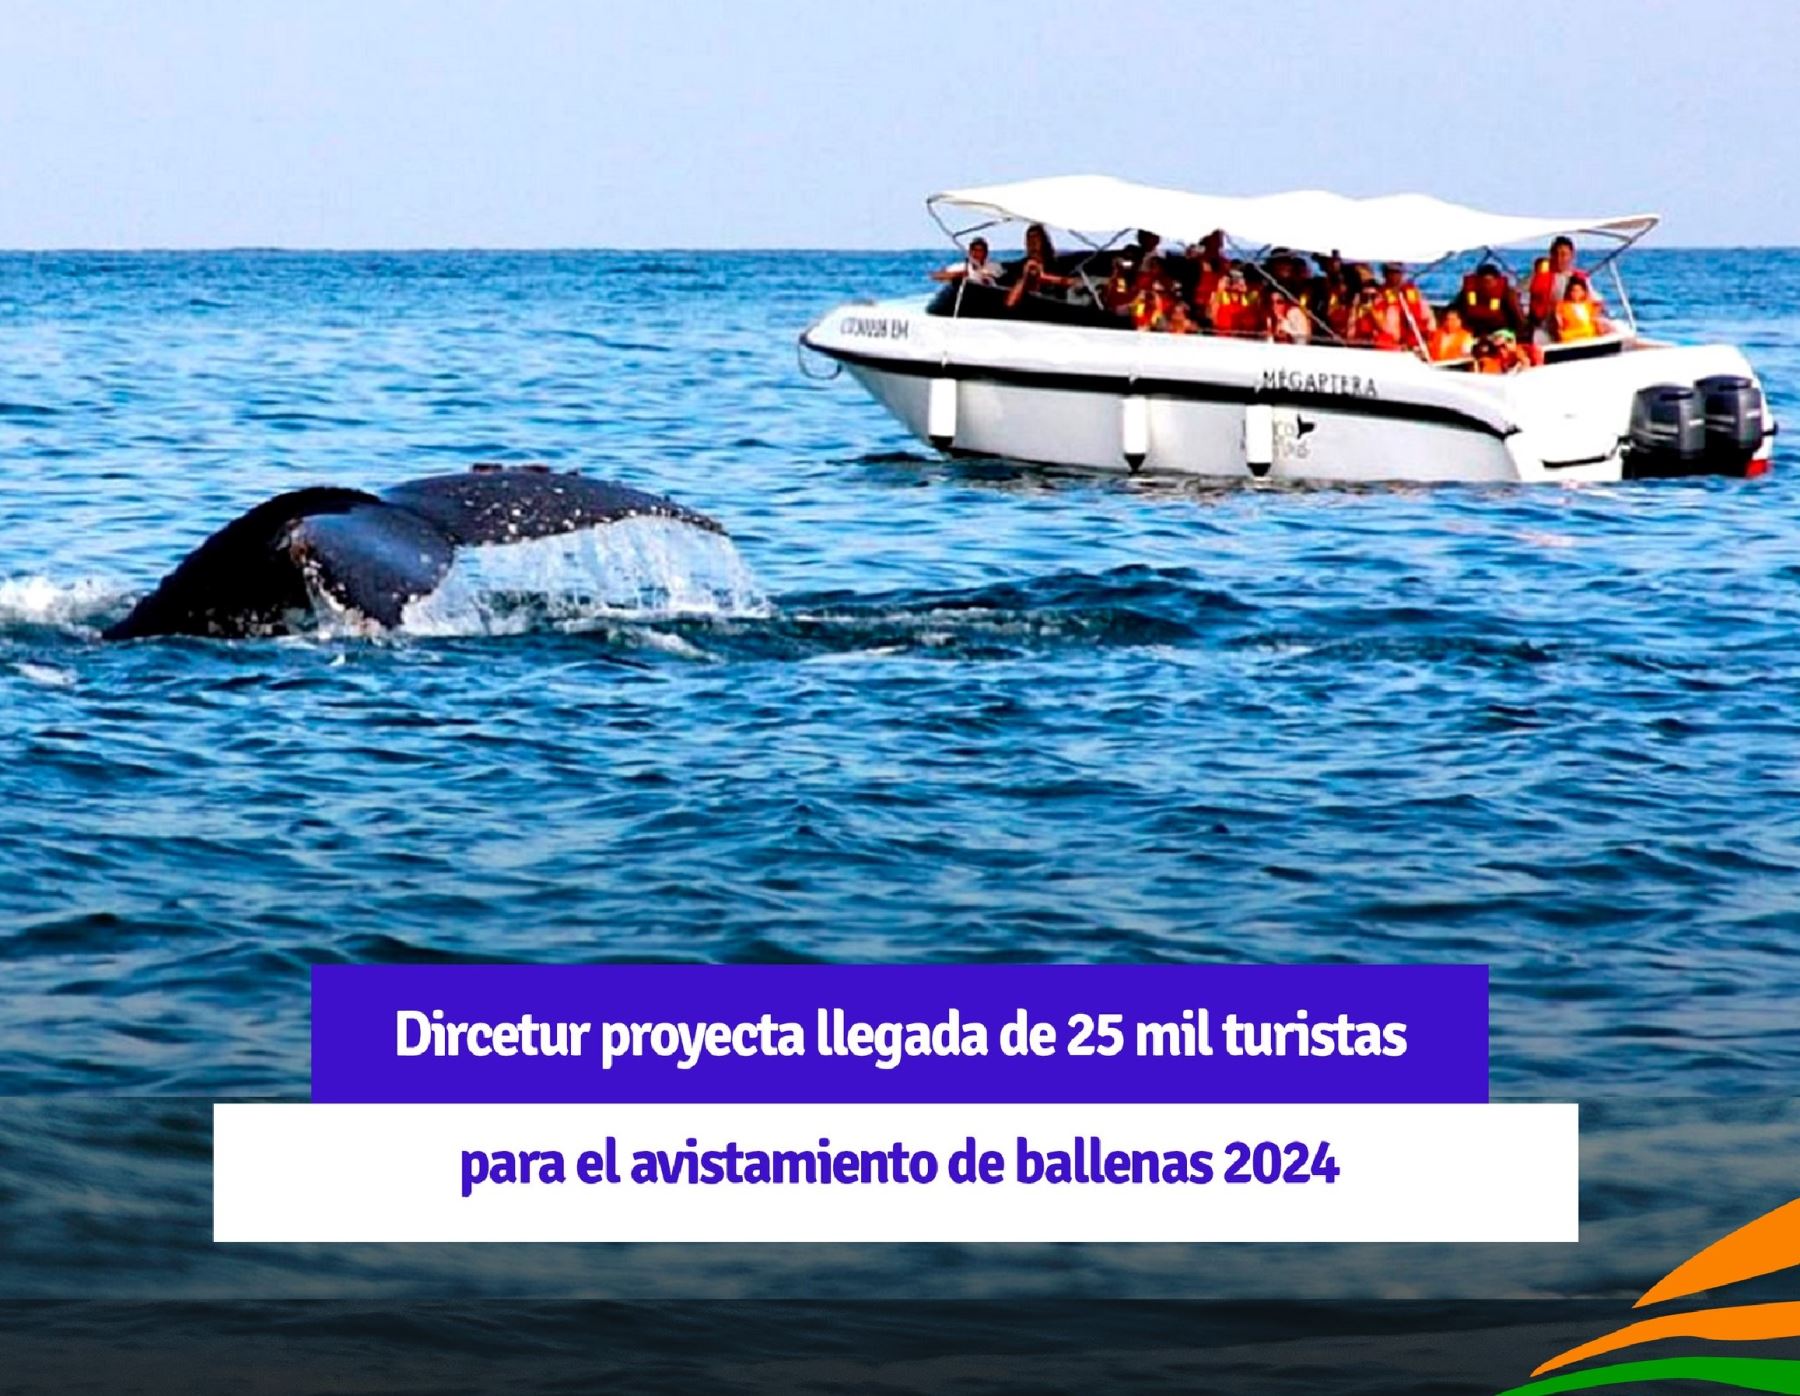 Alrededor de 25,000 visitantes espera recibir Piura durante la temporada de avistamiento de ballenas, uno de los mayores atractivos turísticos de esta región, estimó la Dircetur.